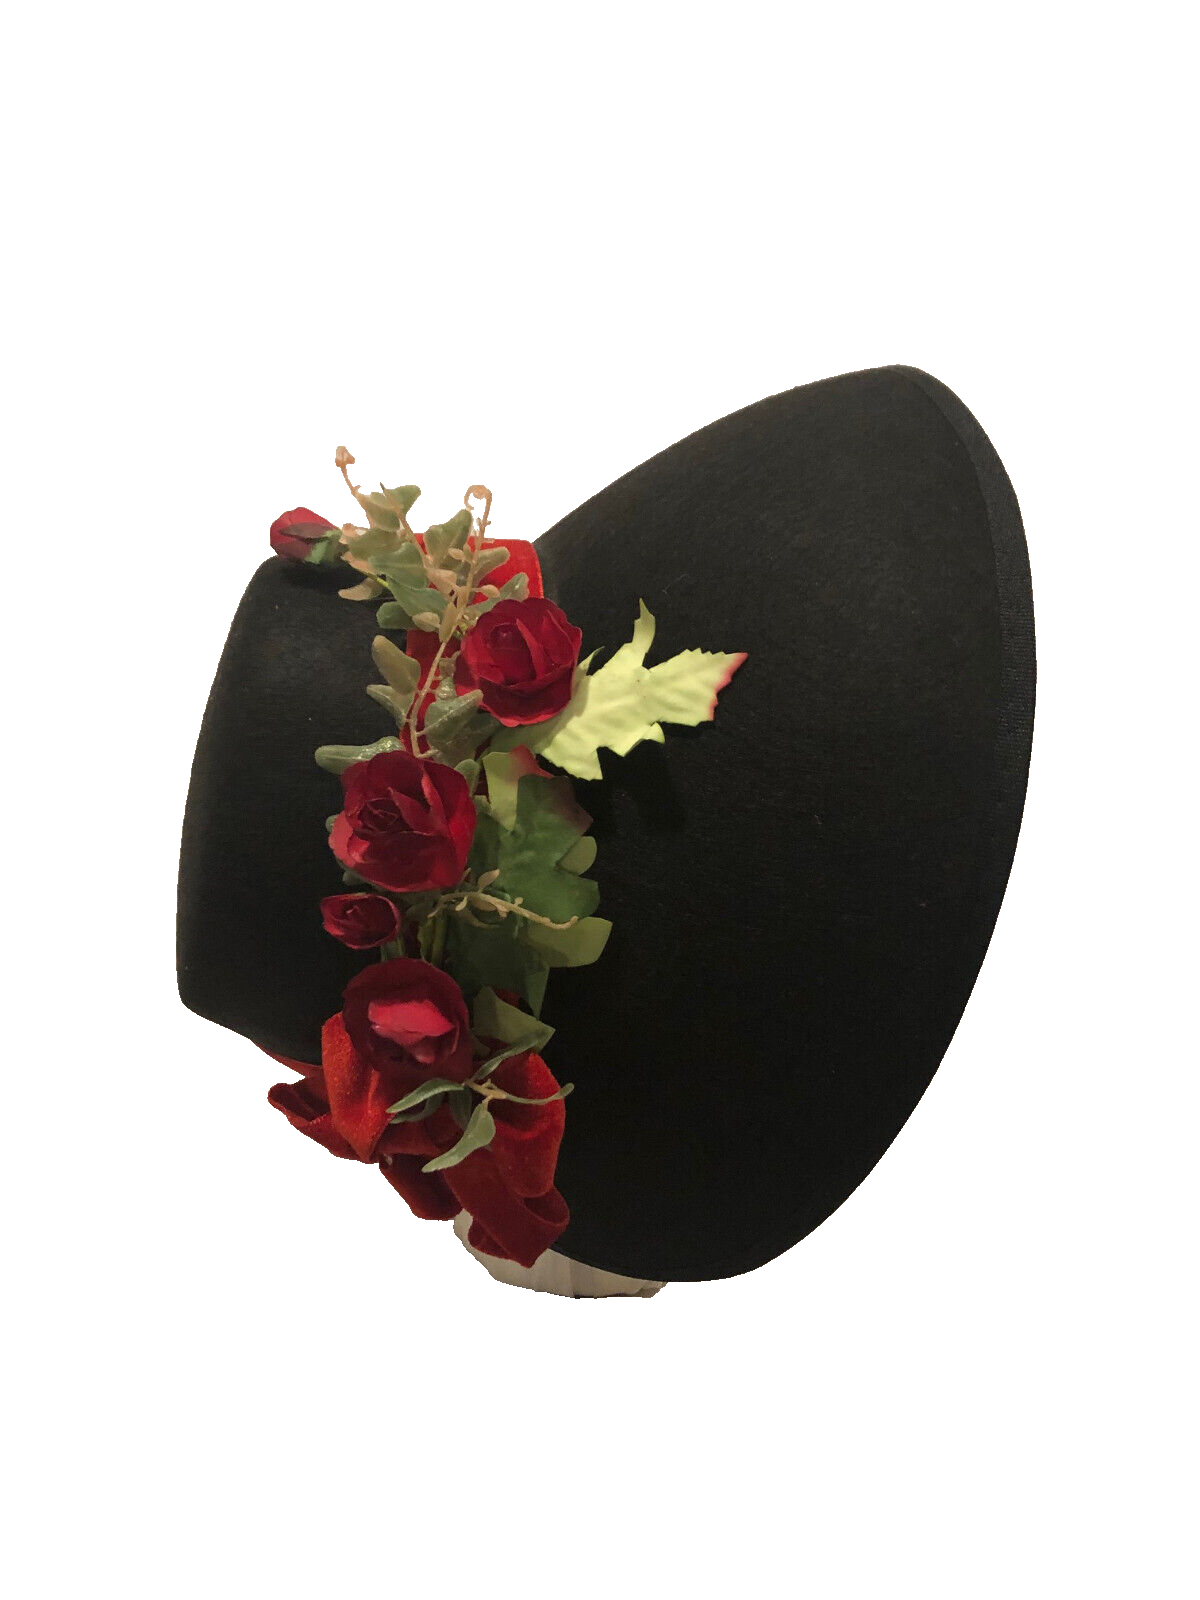 Austentation Regency Victorian Caroler Felt Bonnet Black, Red Velvet & Roses